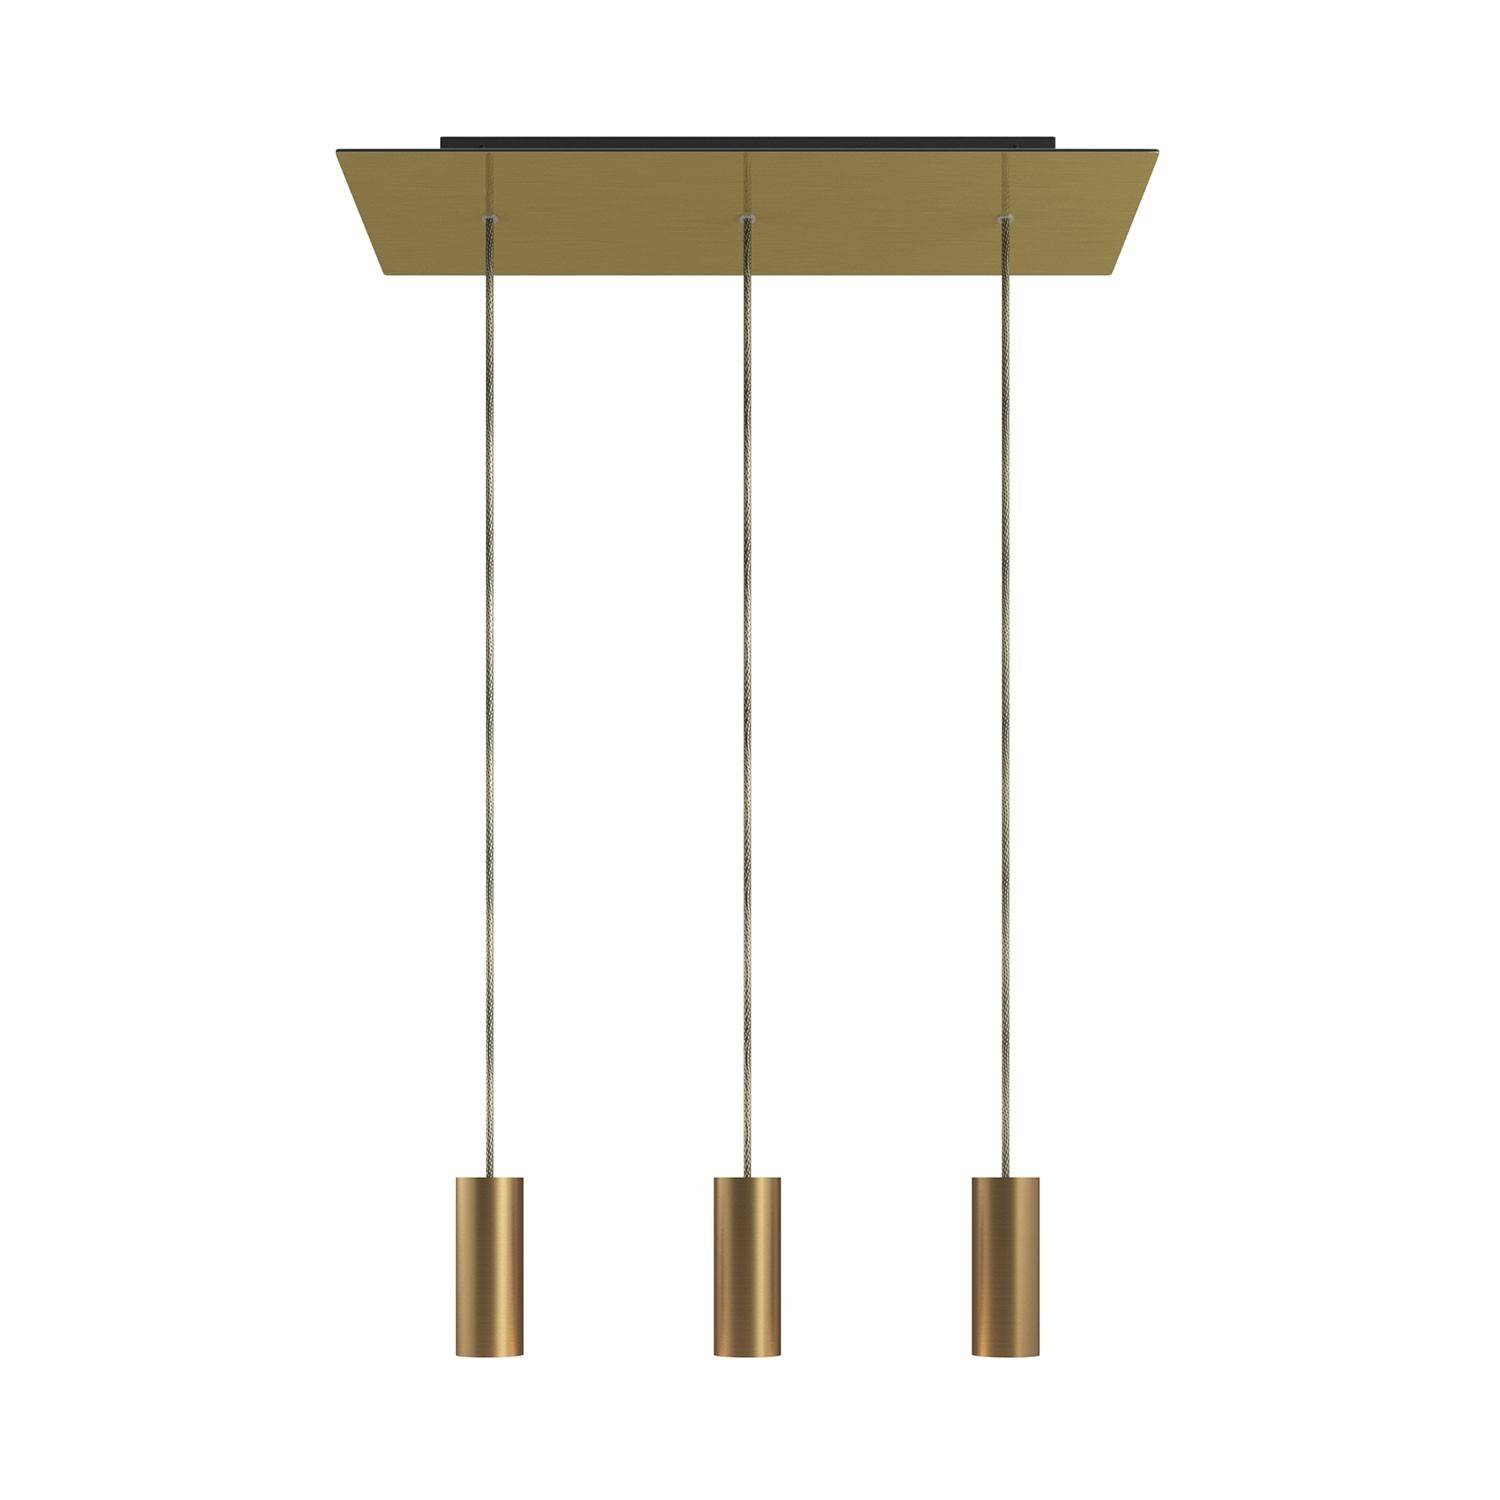 Lampă cu 3 becuri suspendate cu un model rectangular XXL Rose-One de 675 mm, cu cablu din material textil și abajur din metal Tu